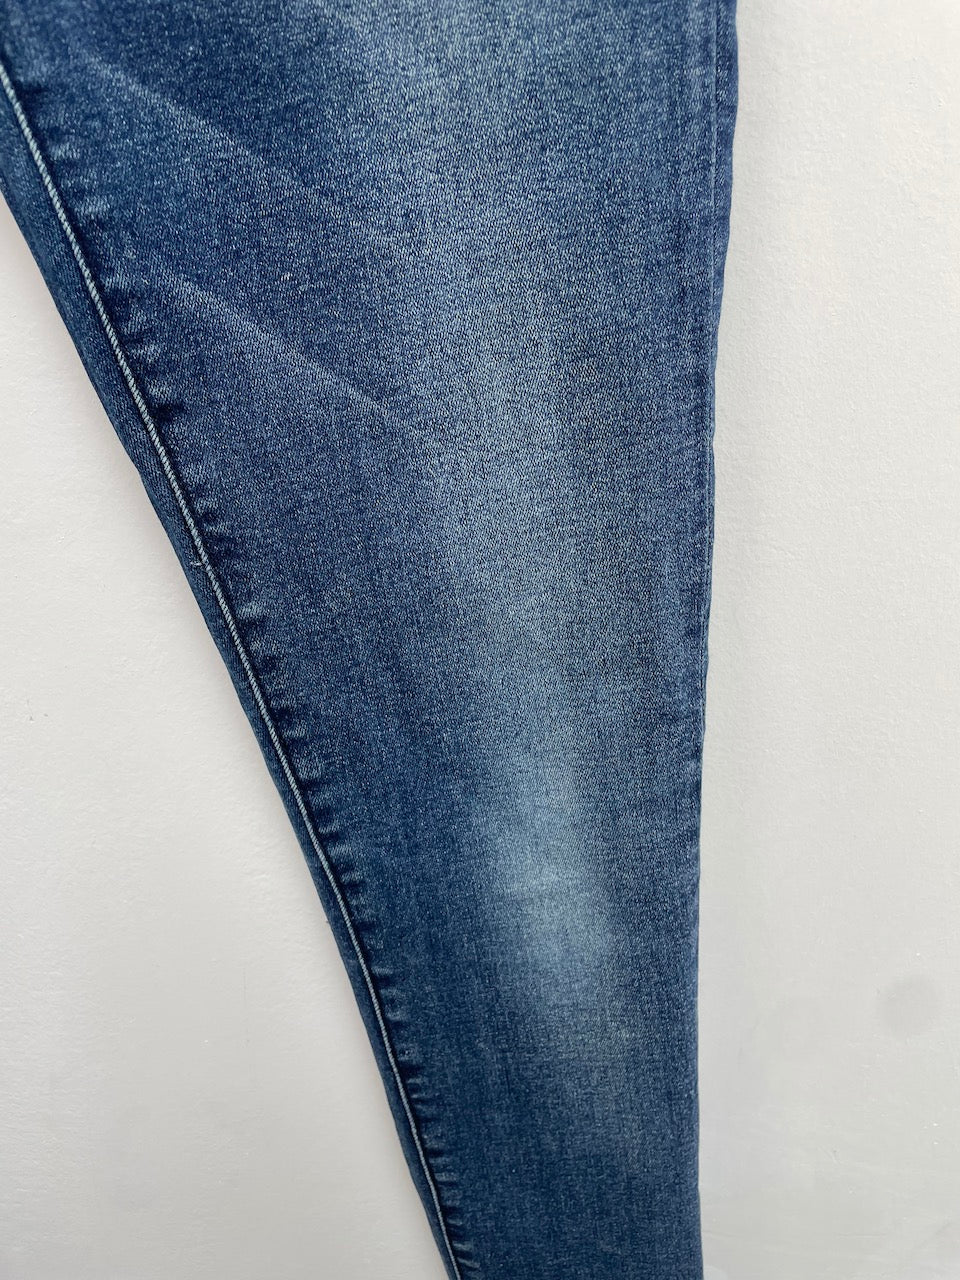 Indian Blue jeans skinny broek maat 16/176